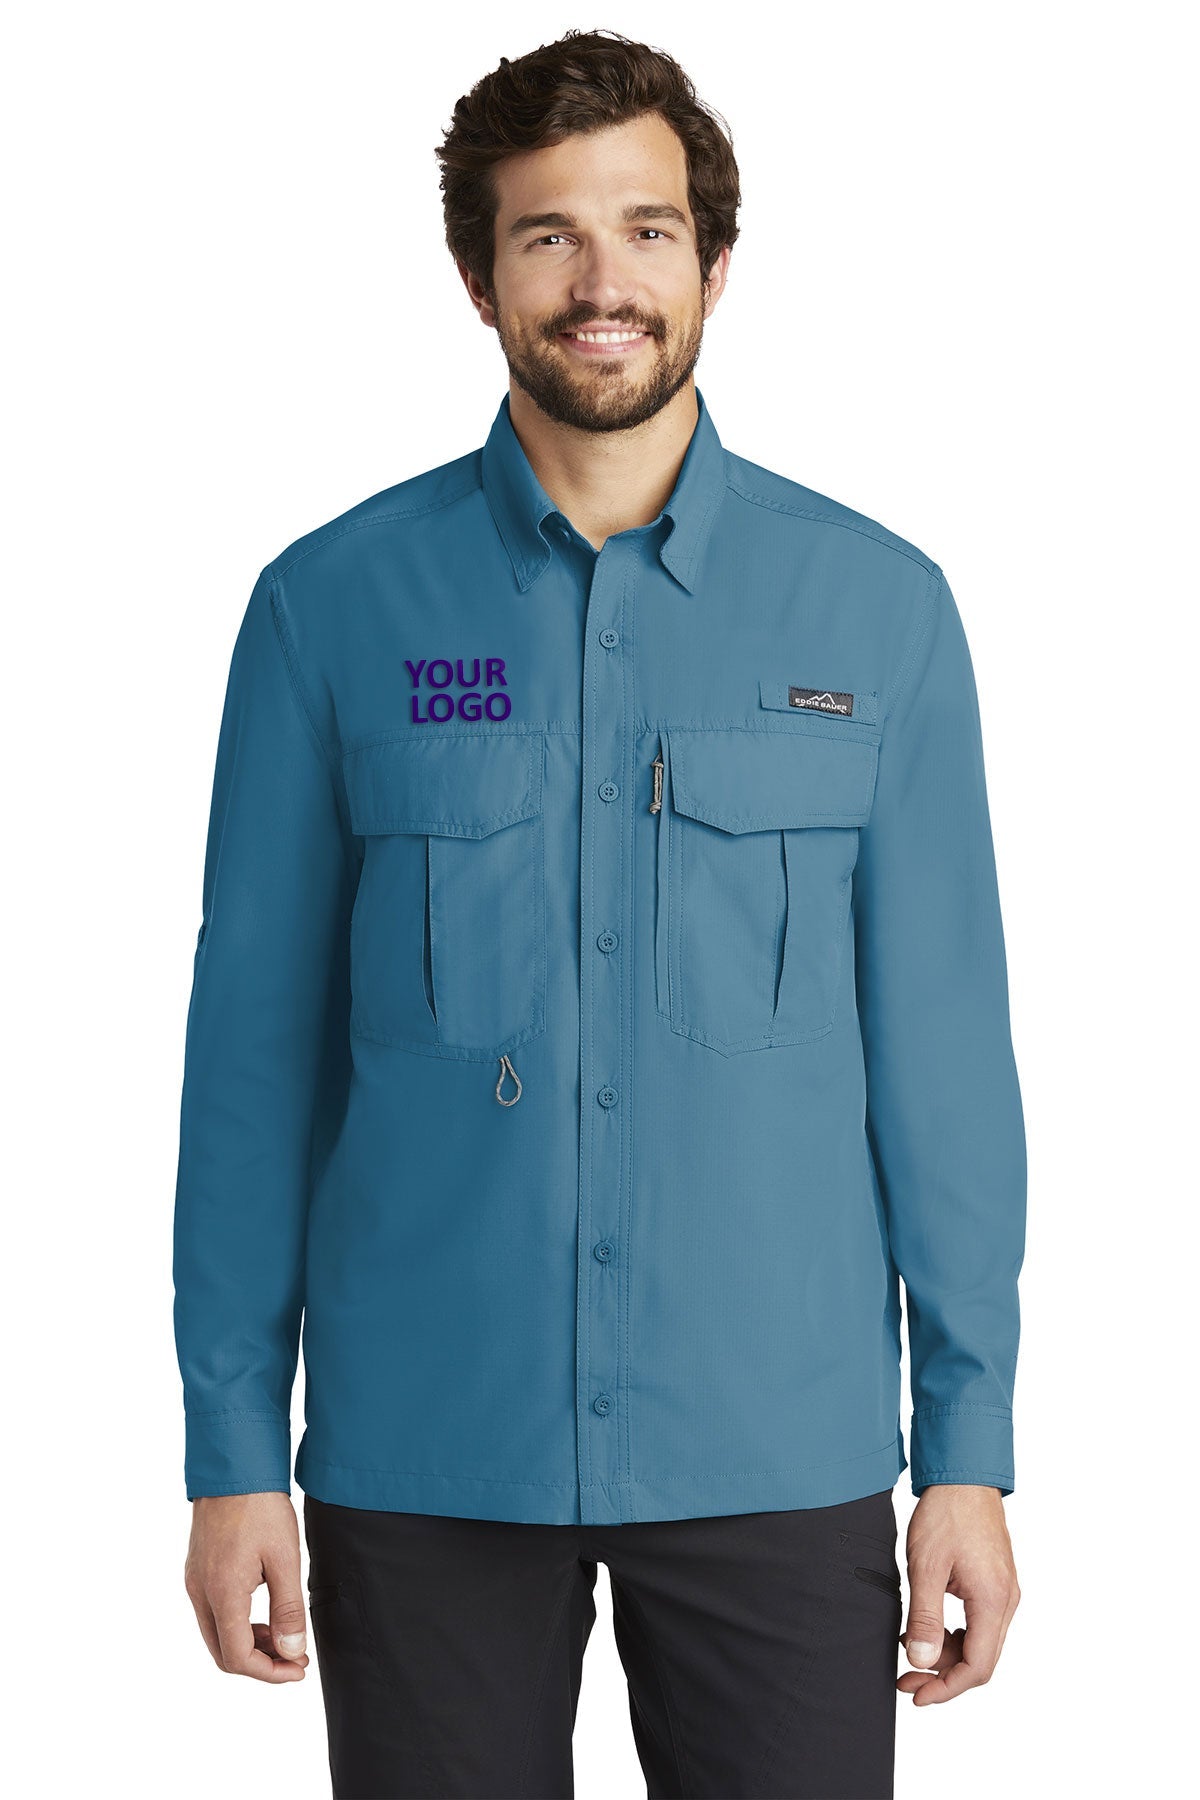 Eddie Bauer Gulf Teal EB600 work shirts with logo